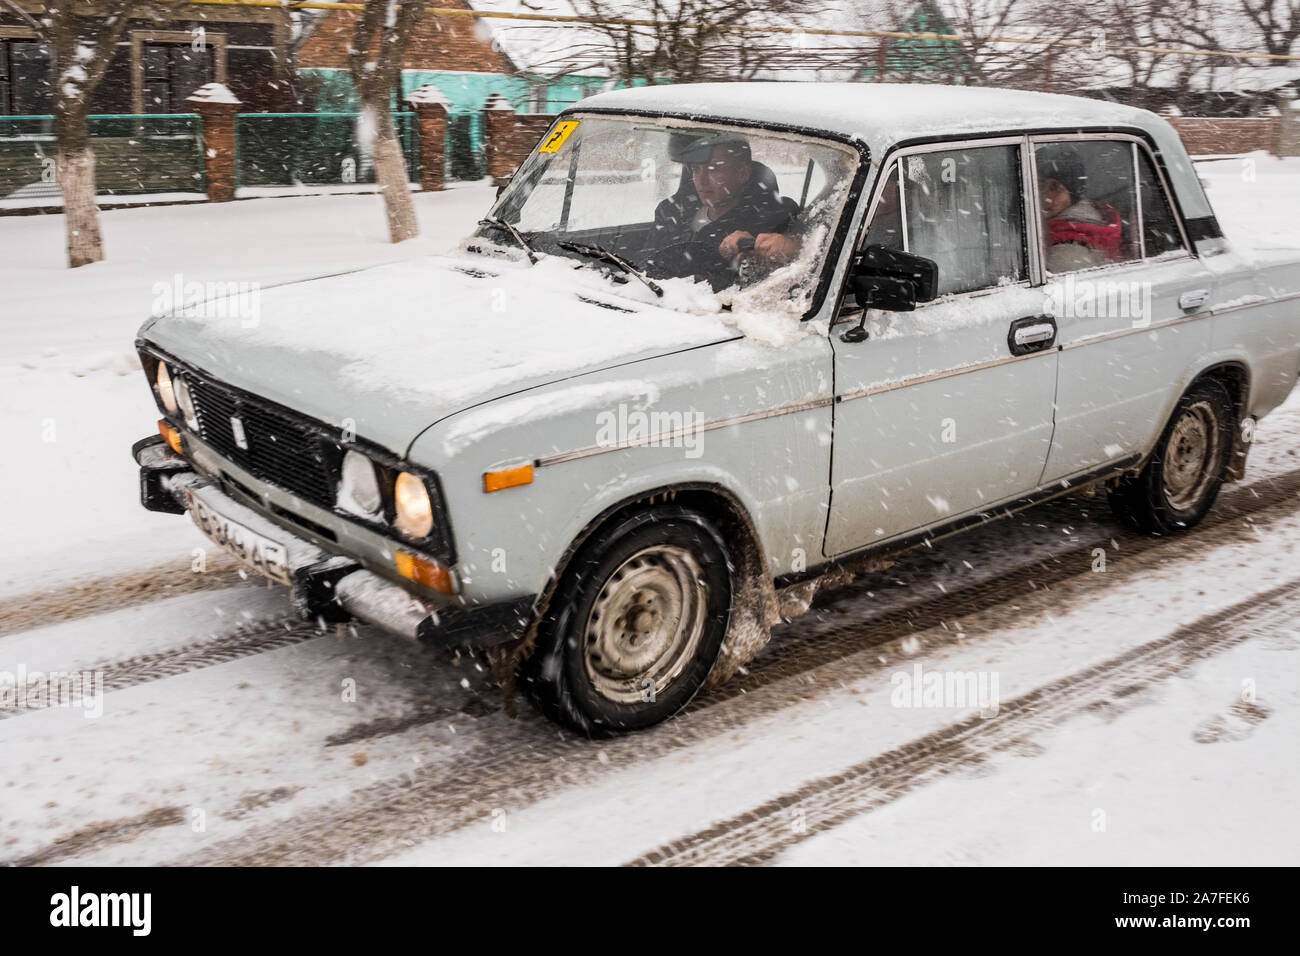 Un vecchio Russian Lada si fa strada lungo una strada innevata. Immagine presa nel paese sconosciuto della Transnistria noto anche come Pridnestrovie Foto Stock